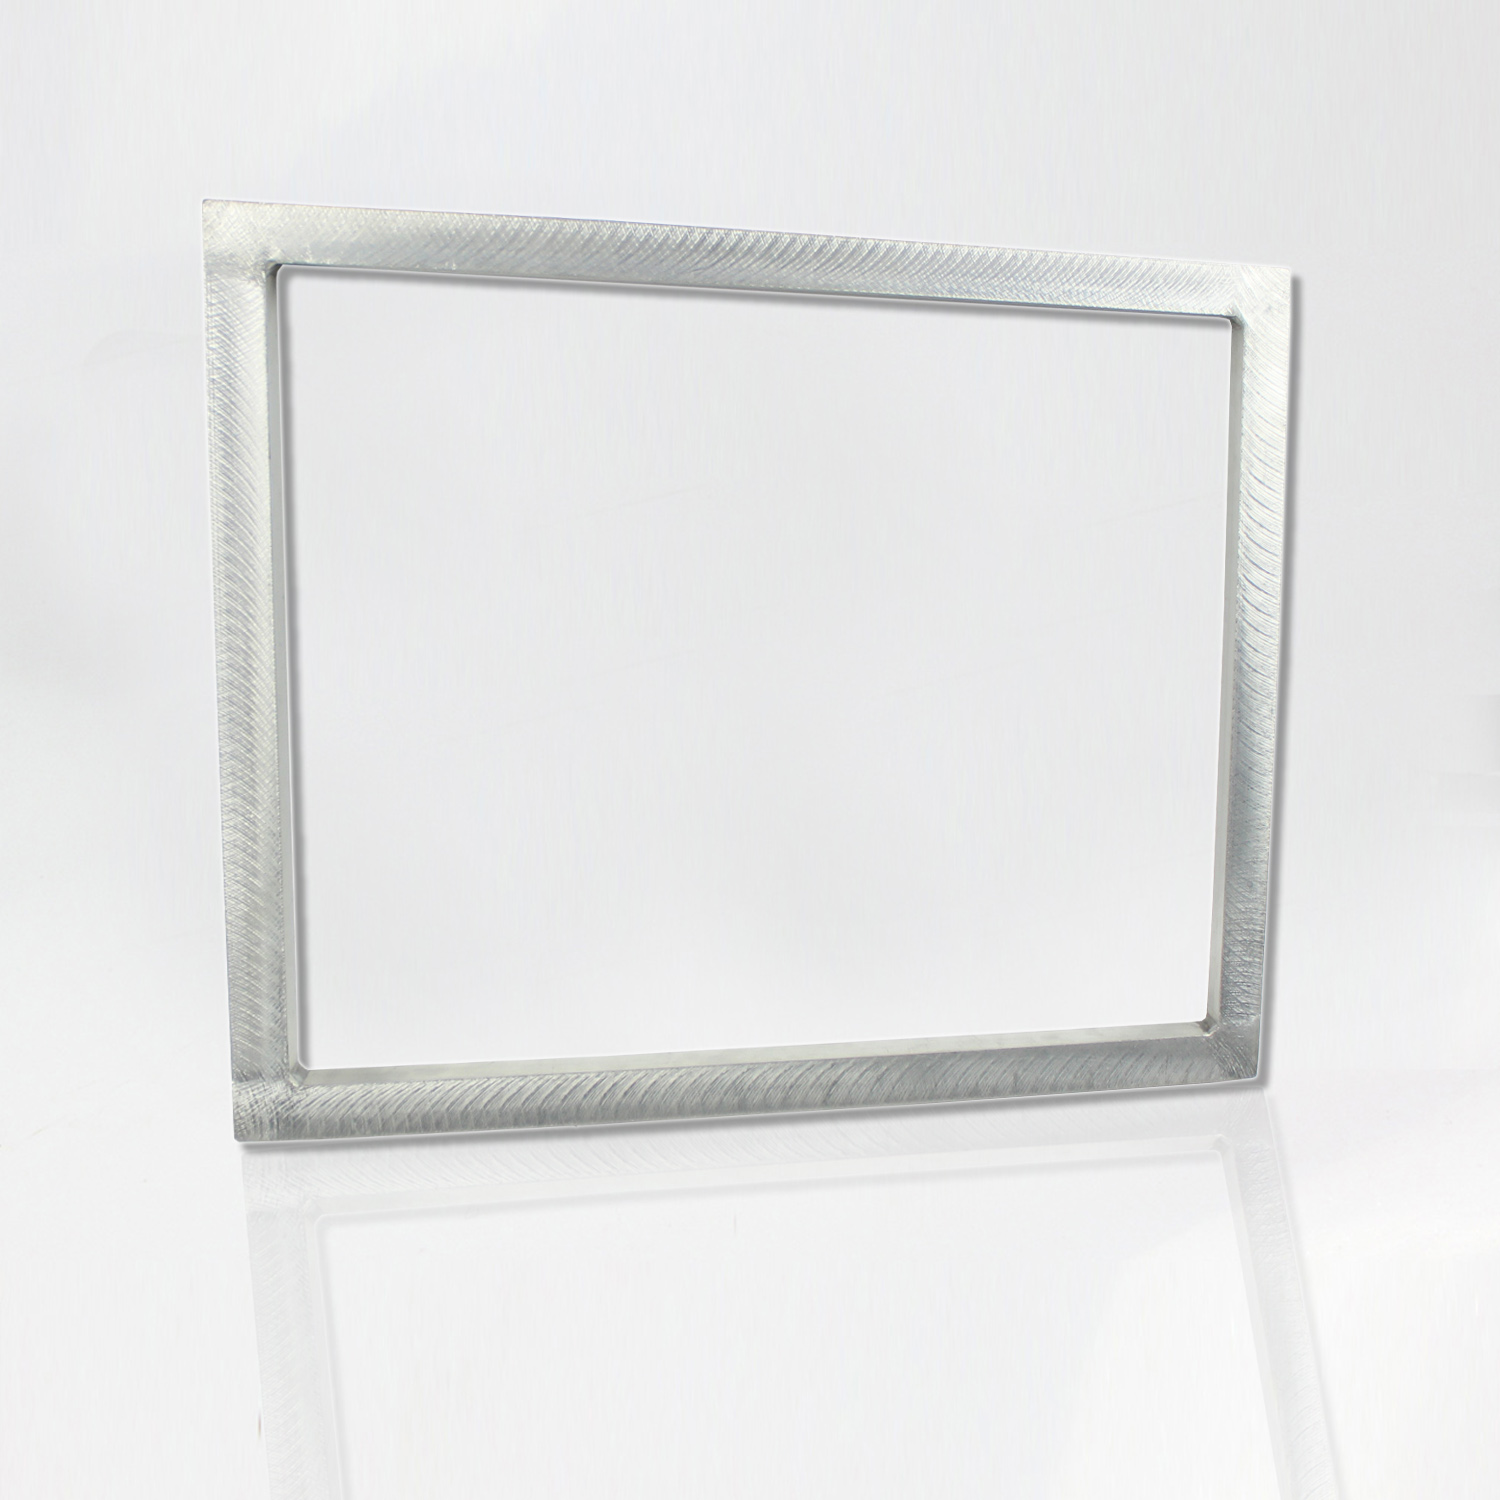 Aluminum Screen Printing Frame